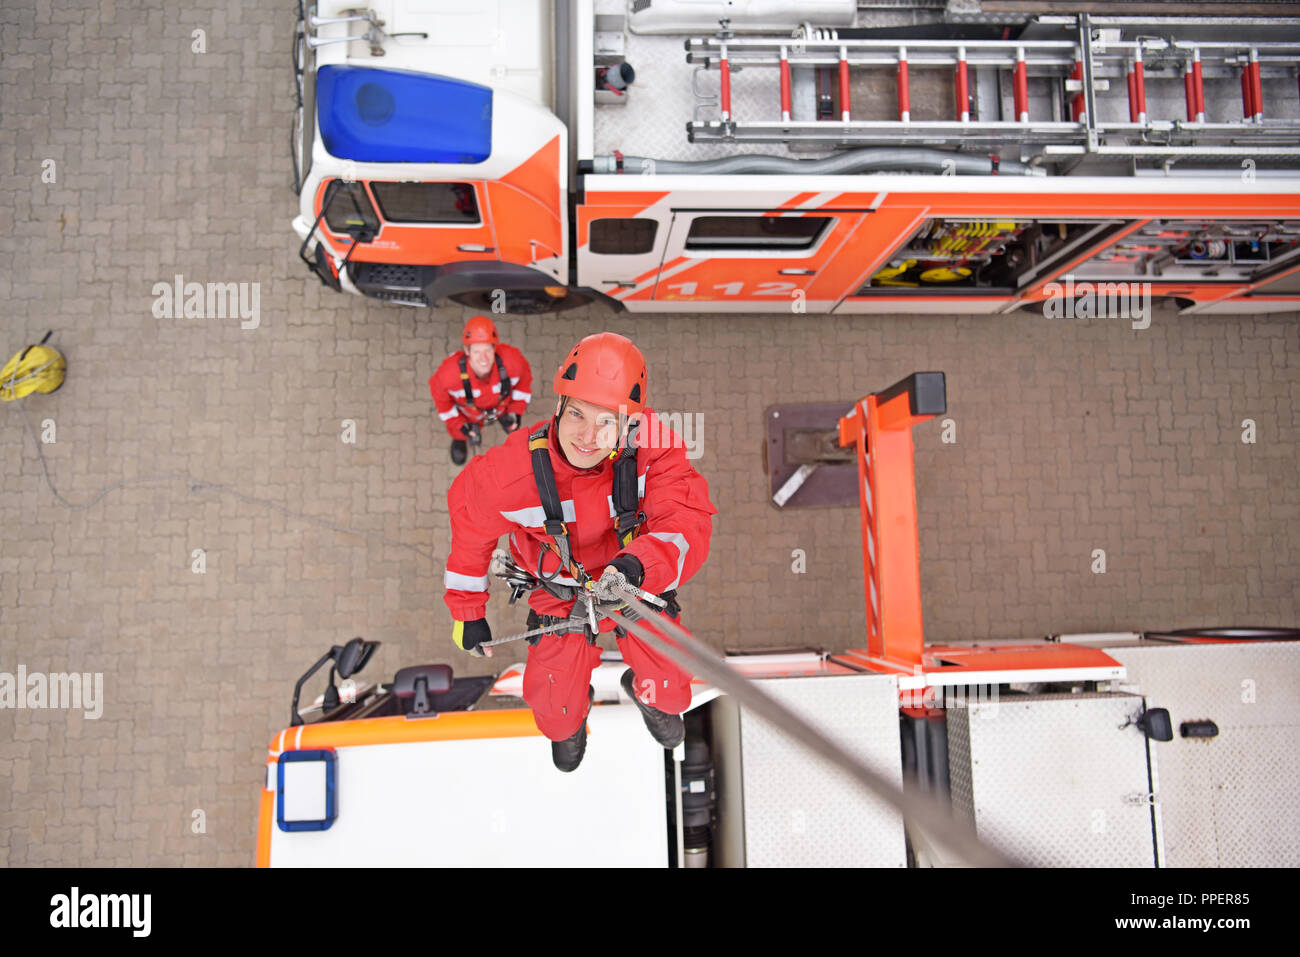 Ausbildung in Höhe Rettung bei der Feuerwehr - Notbetrieb mit einer  Laufkatze und Abseilen Stockfotografie - Alamy